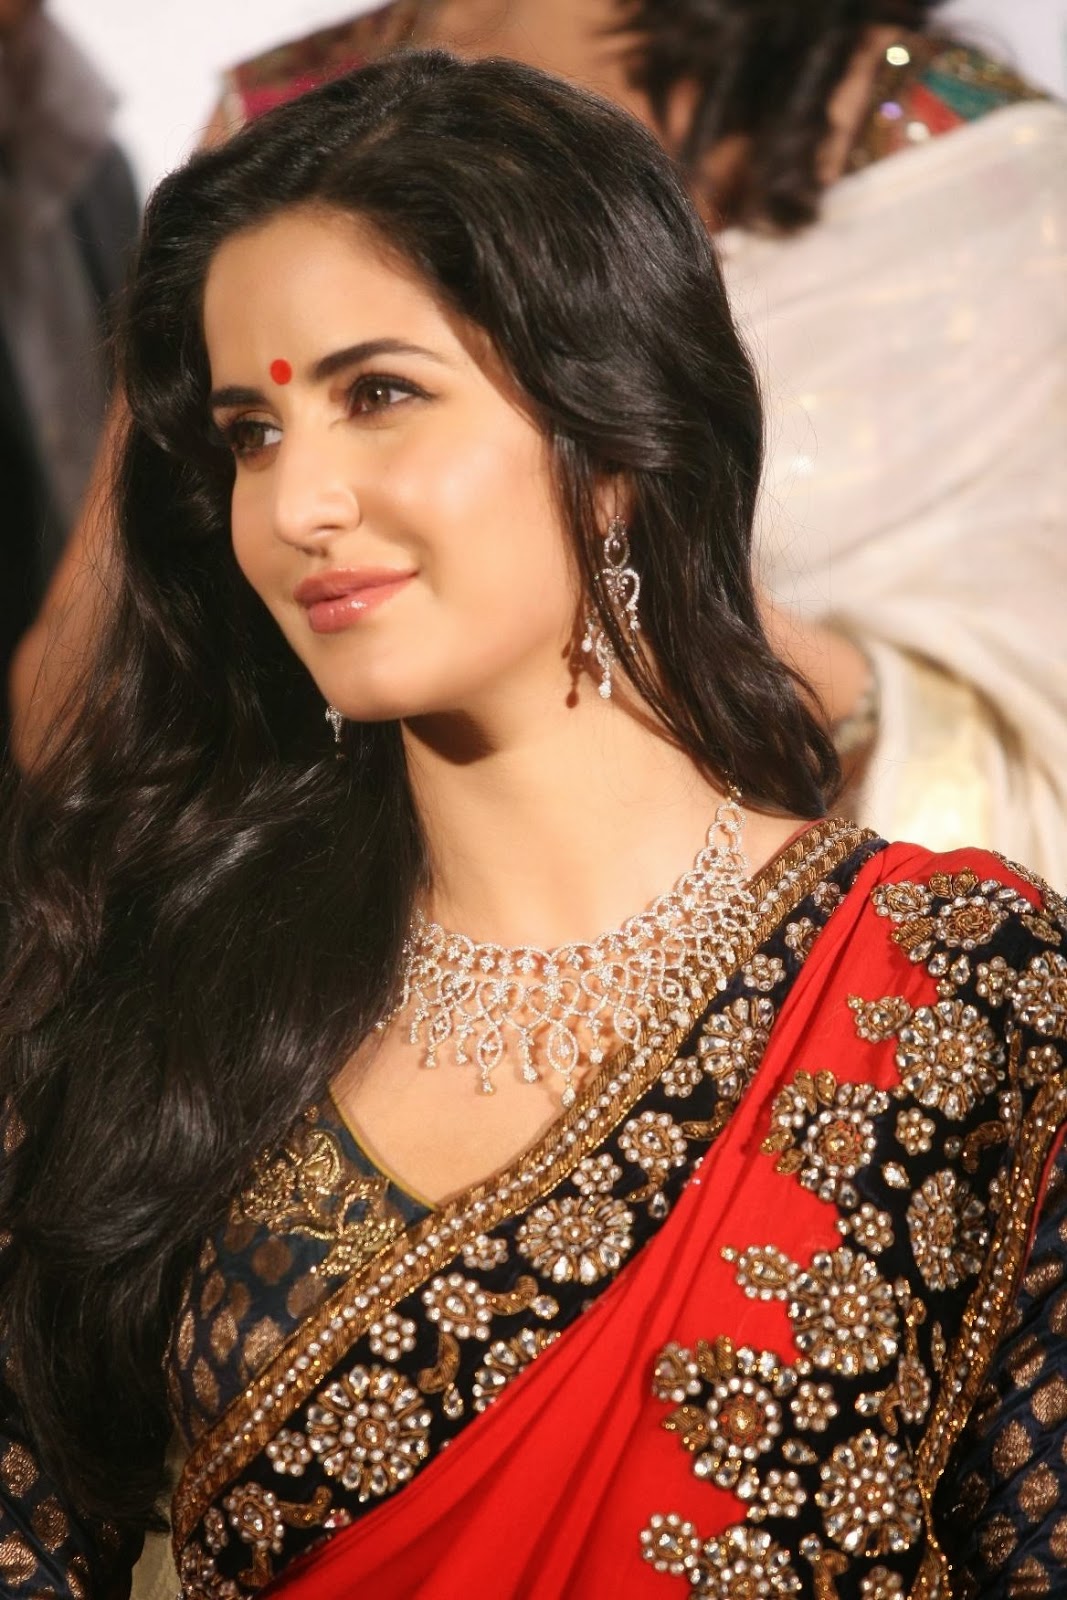 Hot Looking Face Photos Of Katrina Kaif In Red Saree